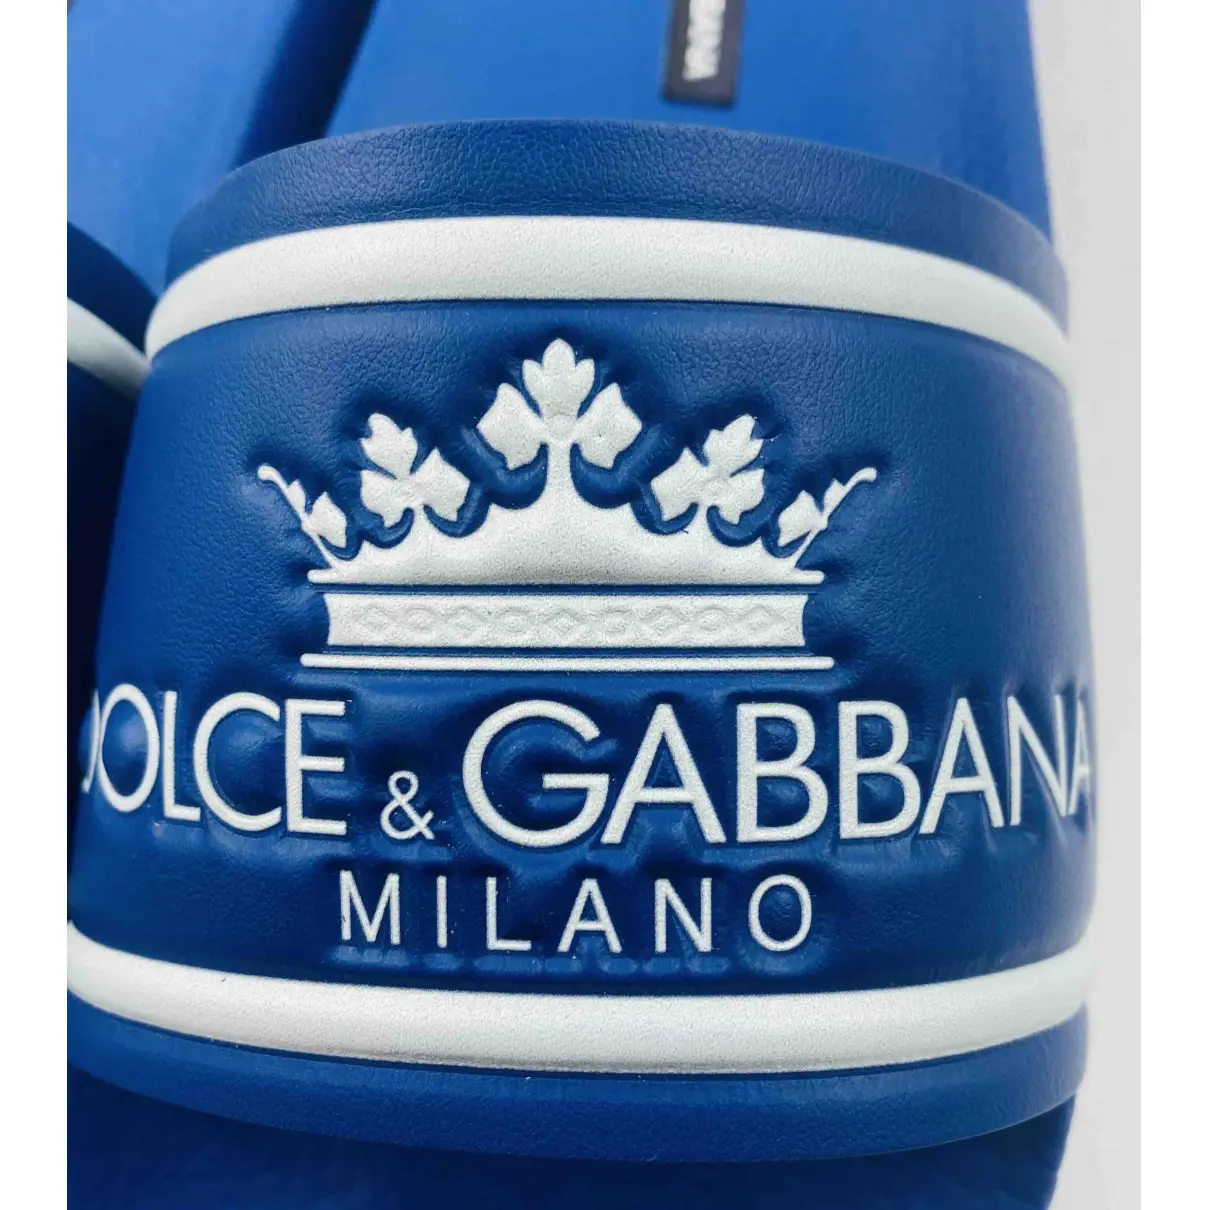 Buy Dolce & Gabbana Sandals online